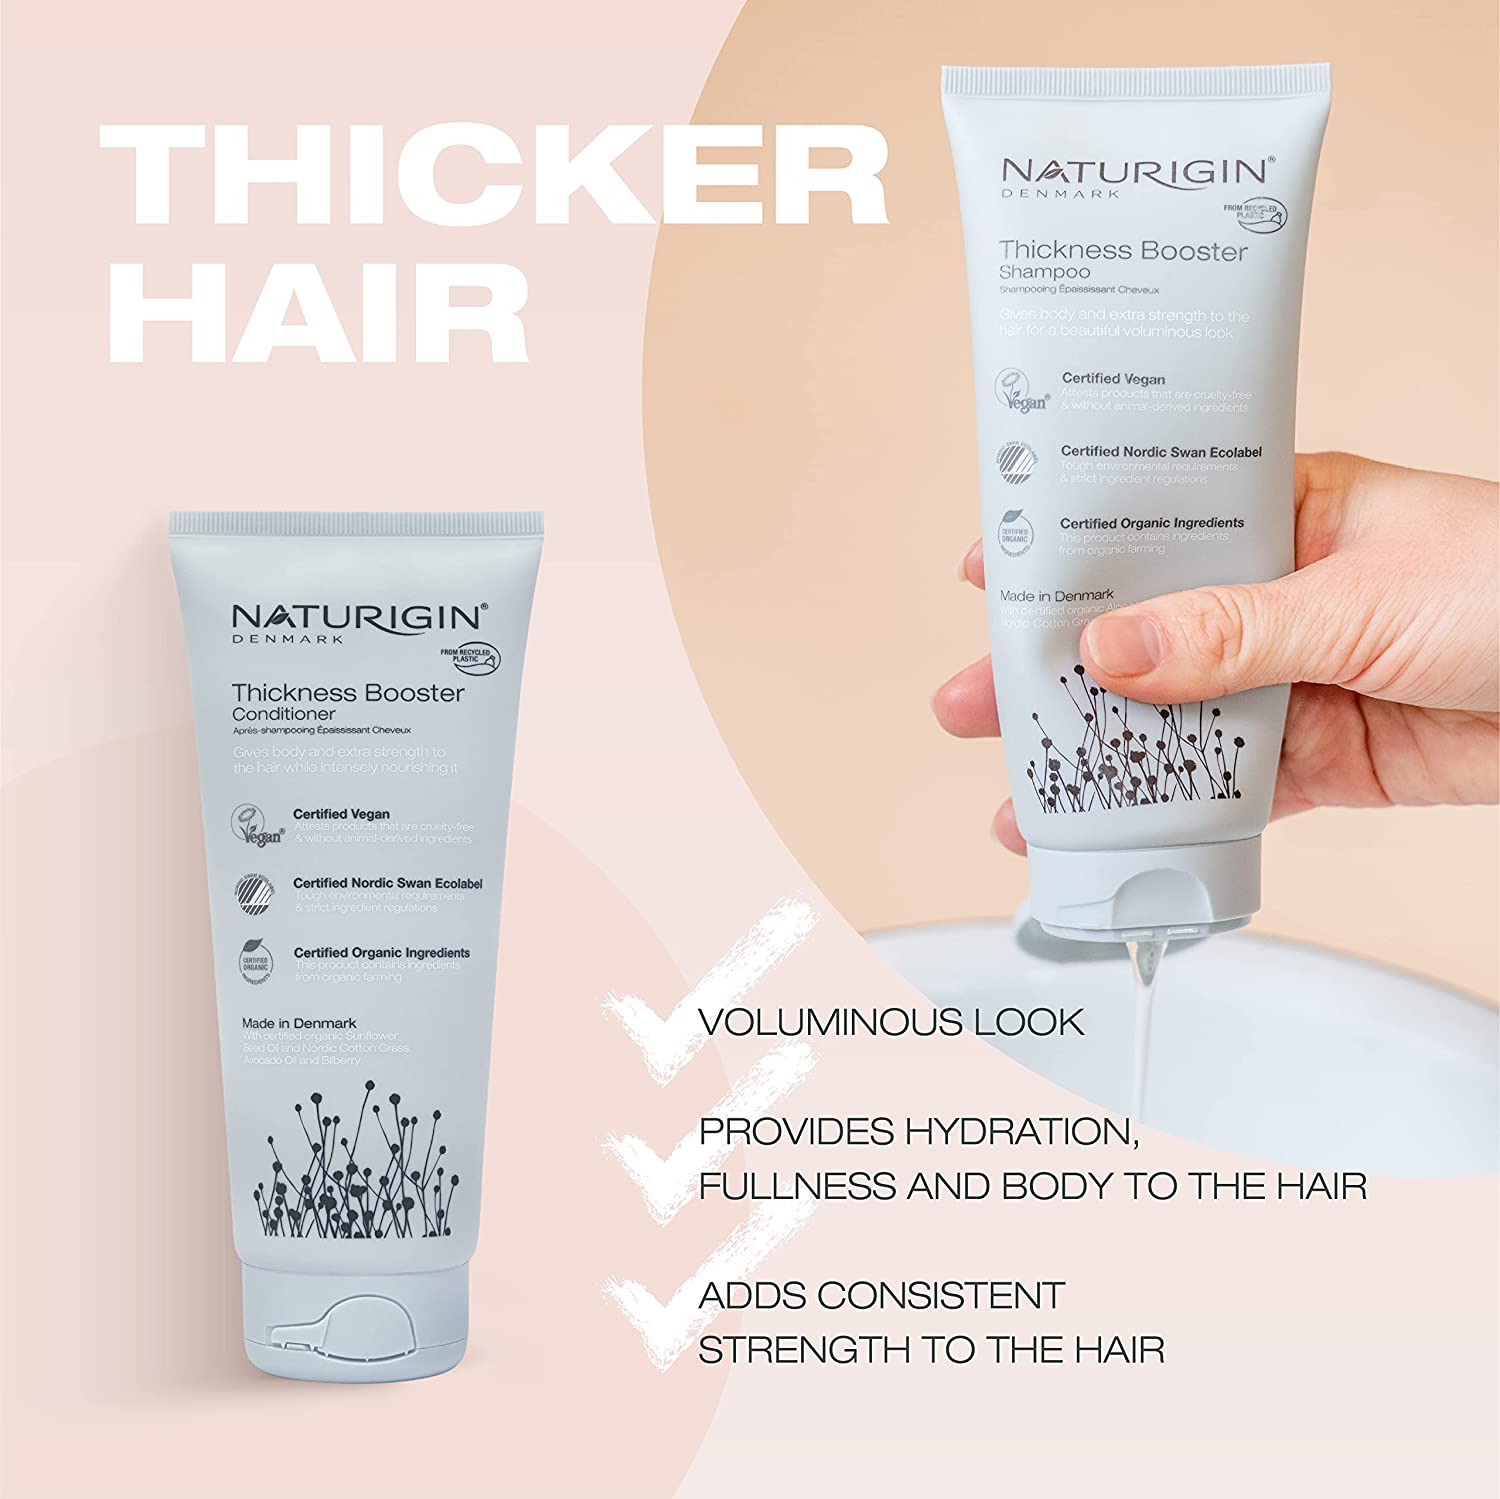 NATURIGIN Thickness Booster Shampoo - E11 Store